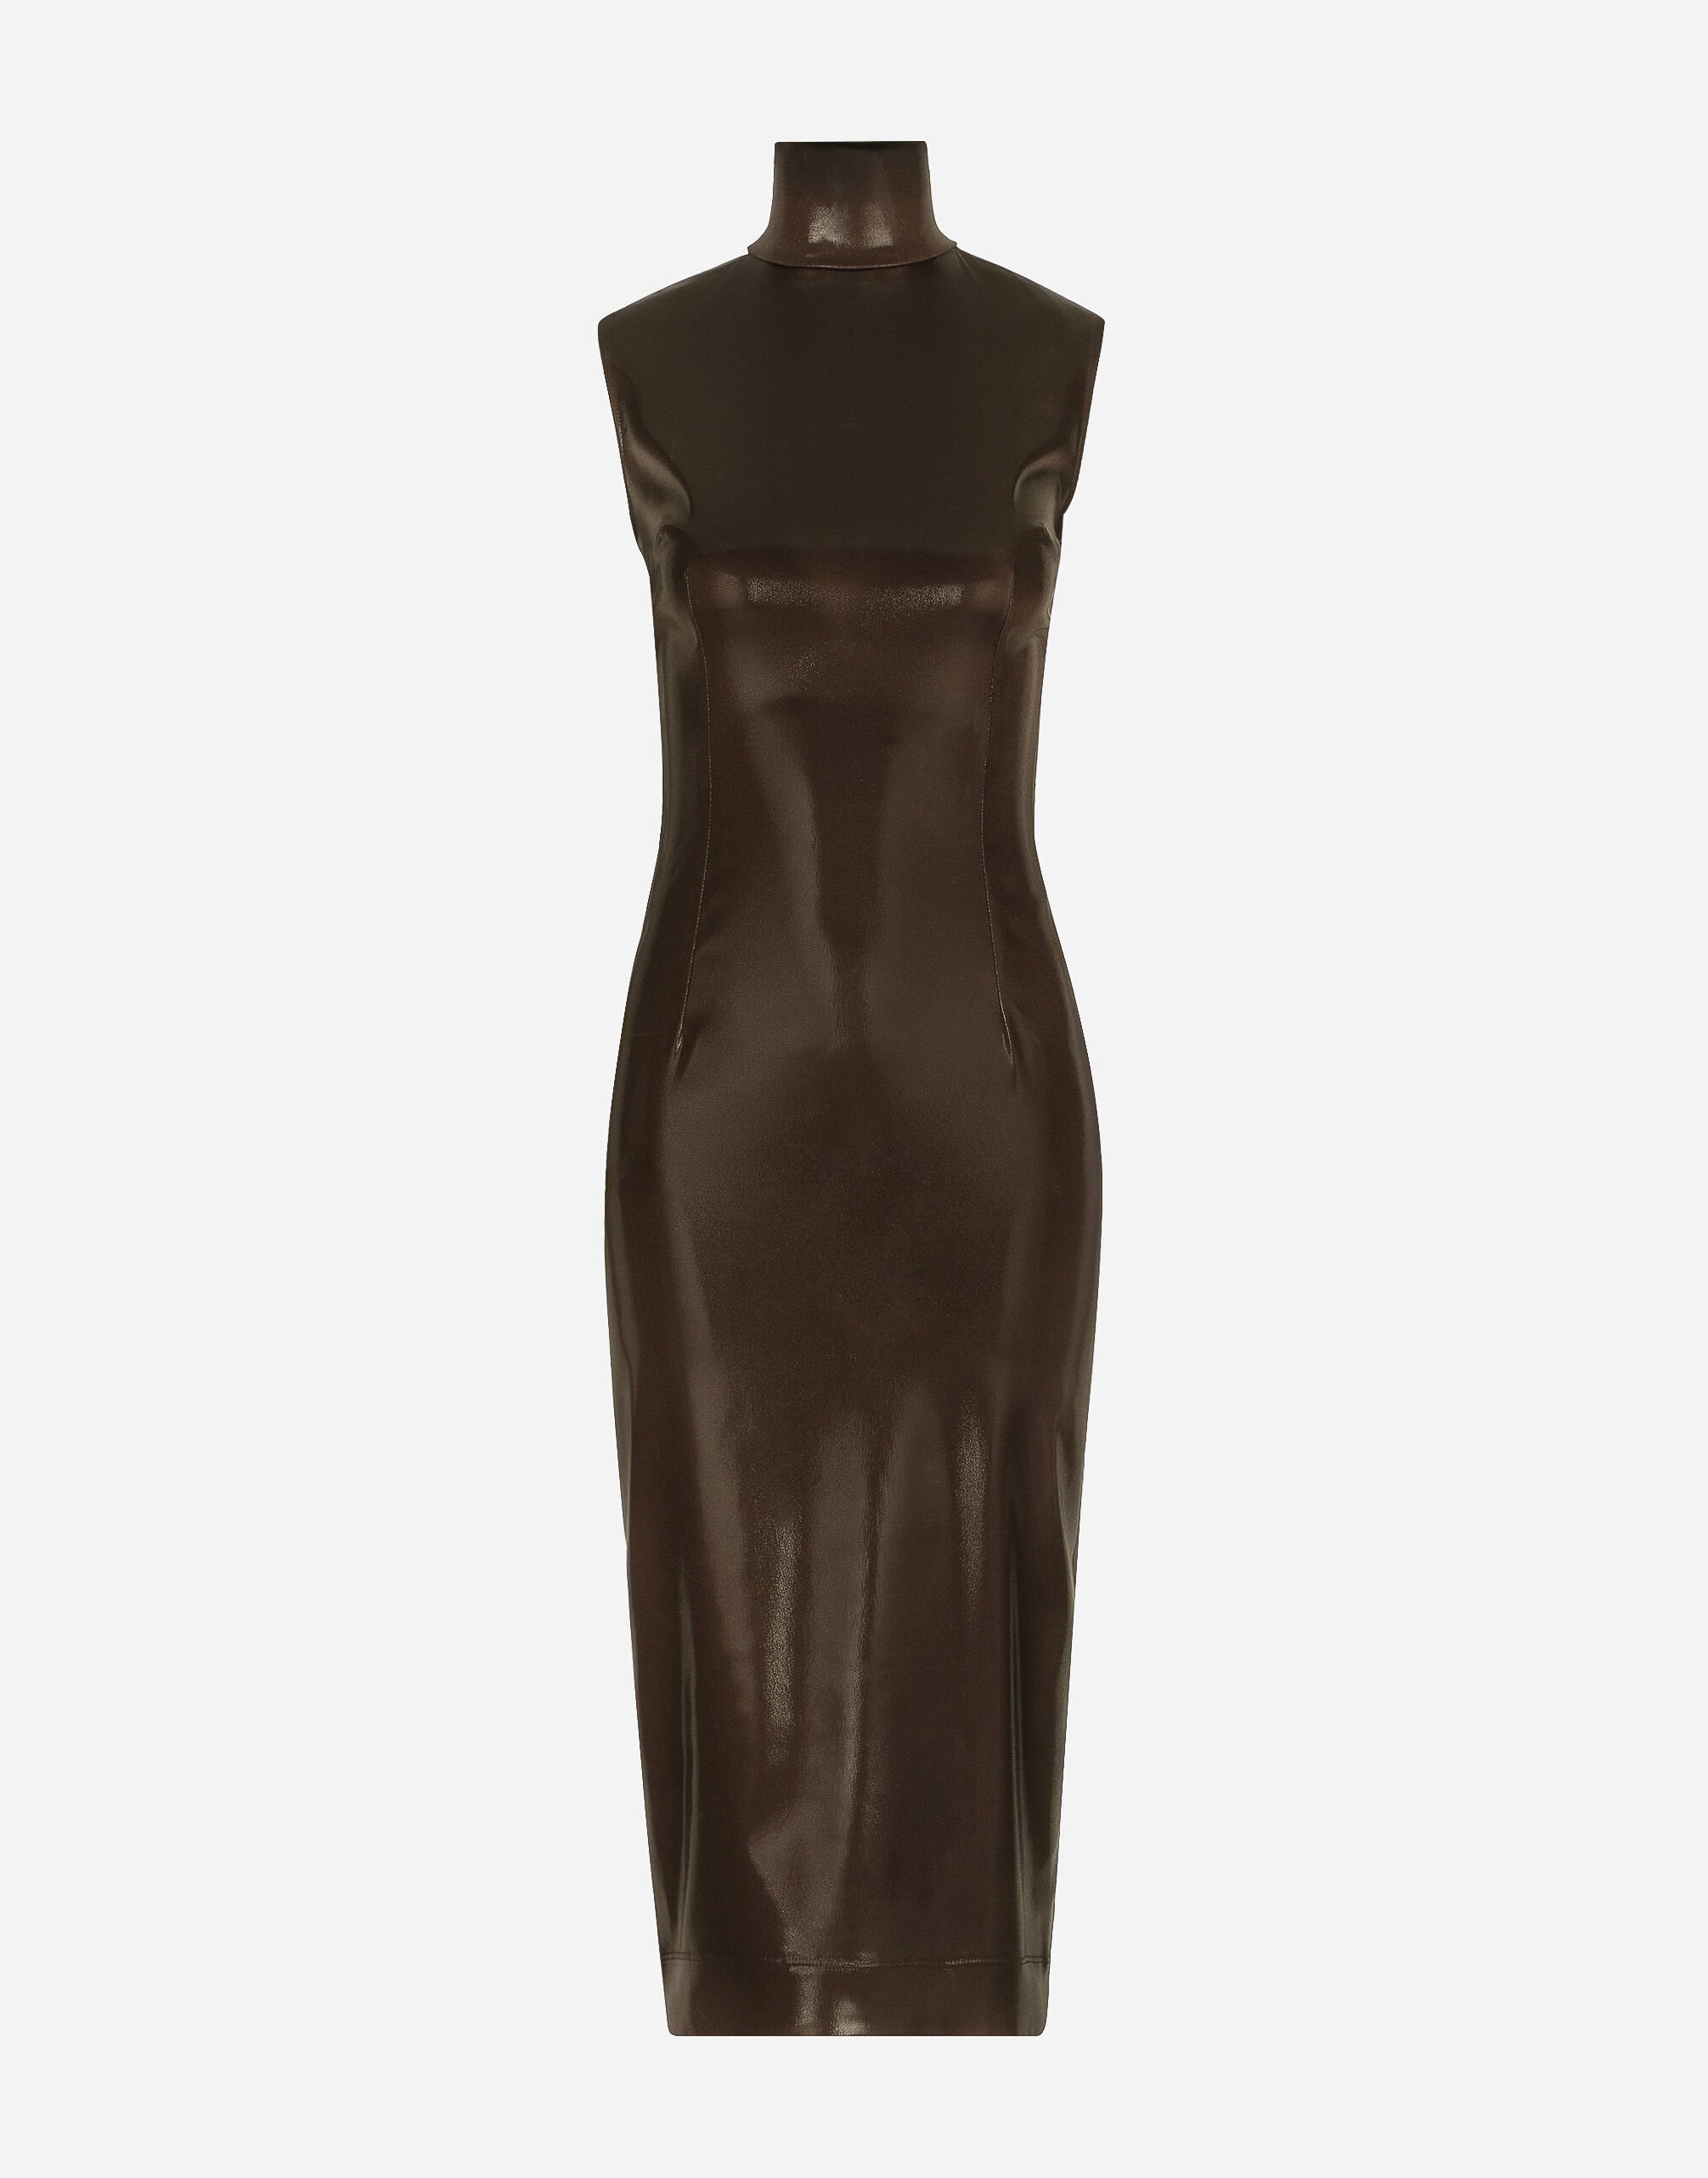 Dolce & Gabbana Sleeveless calf-length dress in shiny satin Beige BB6711AV893